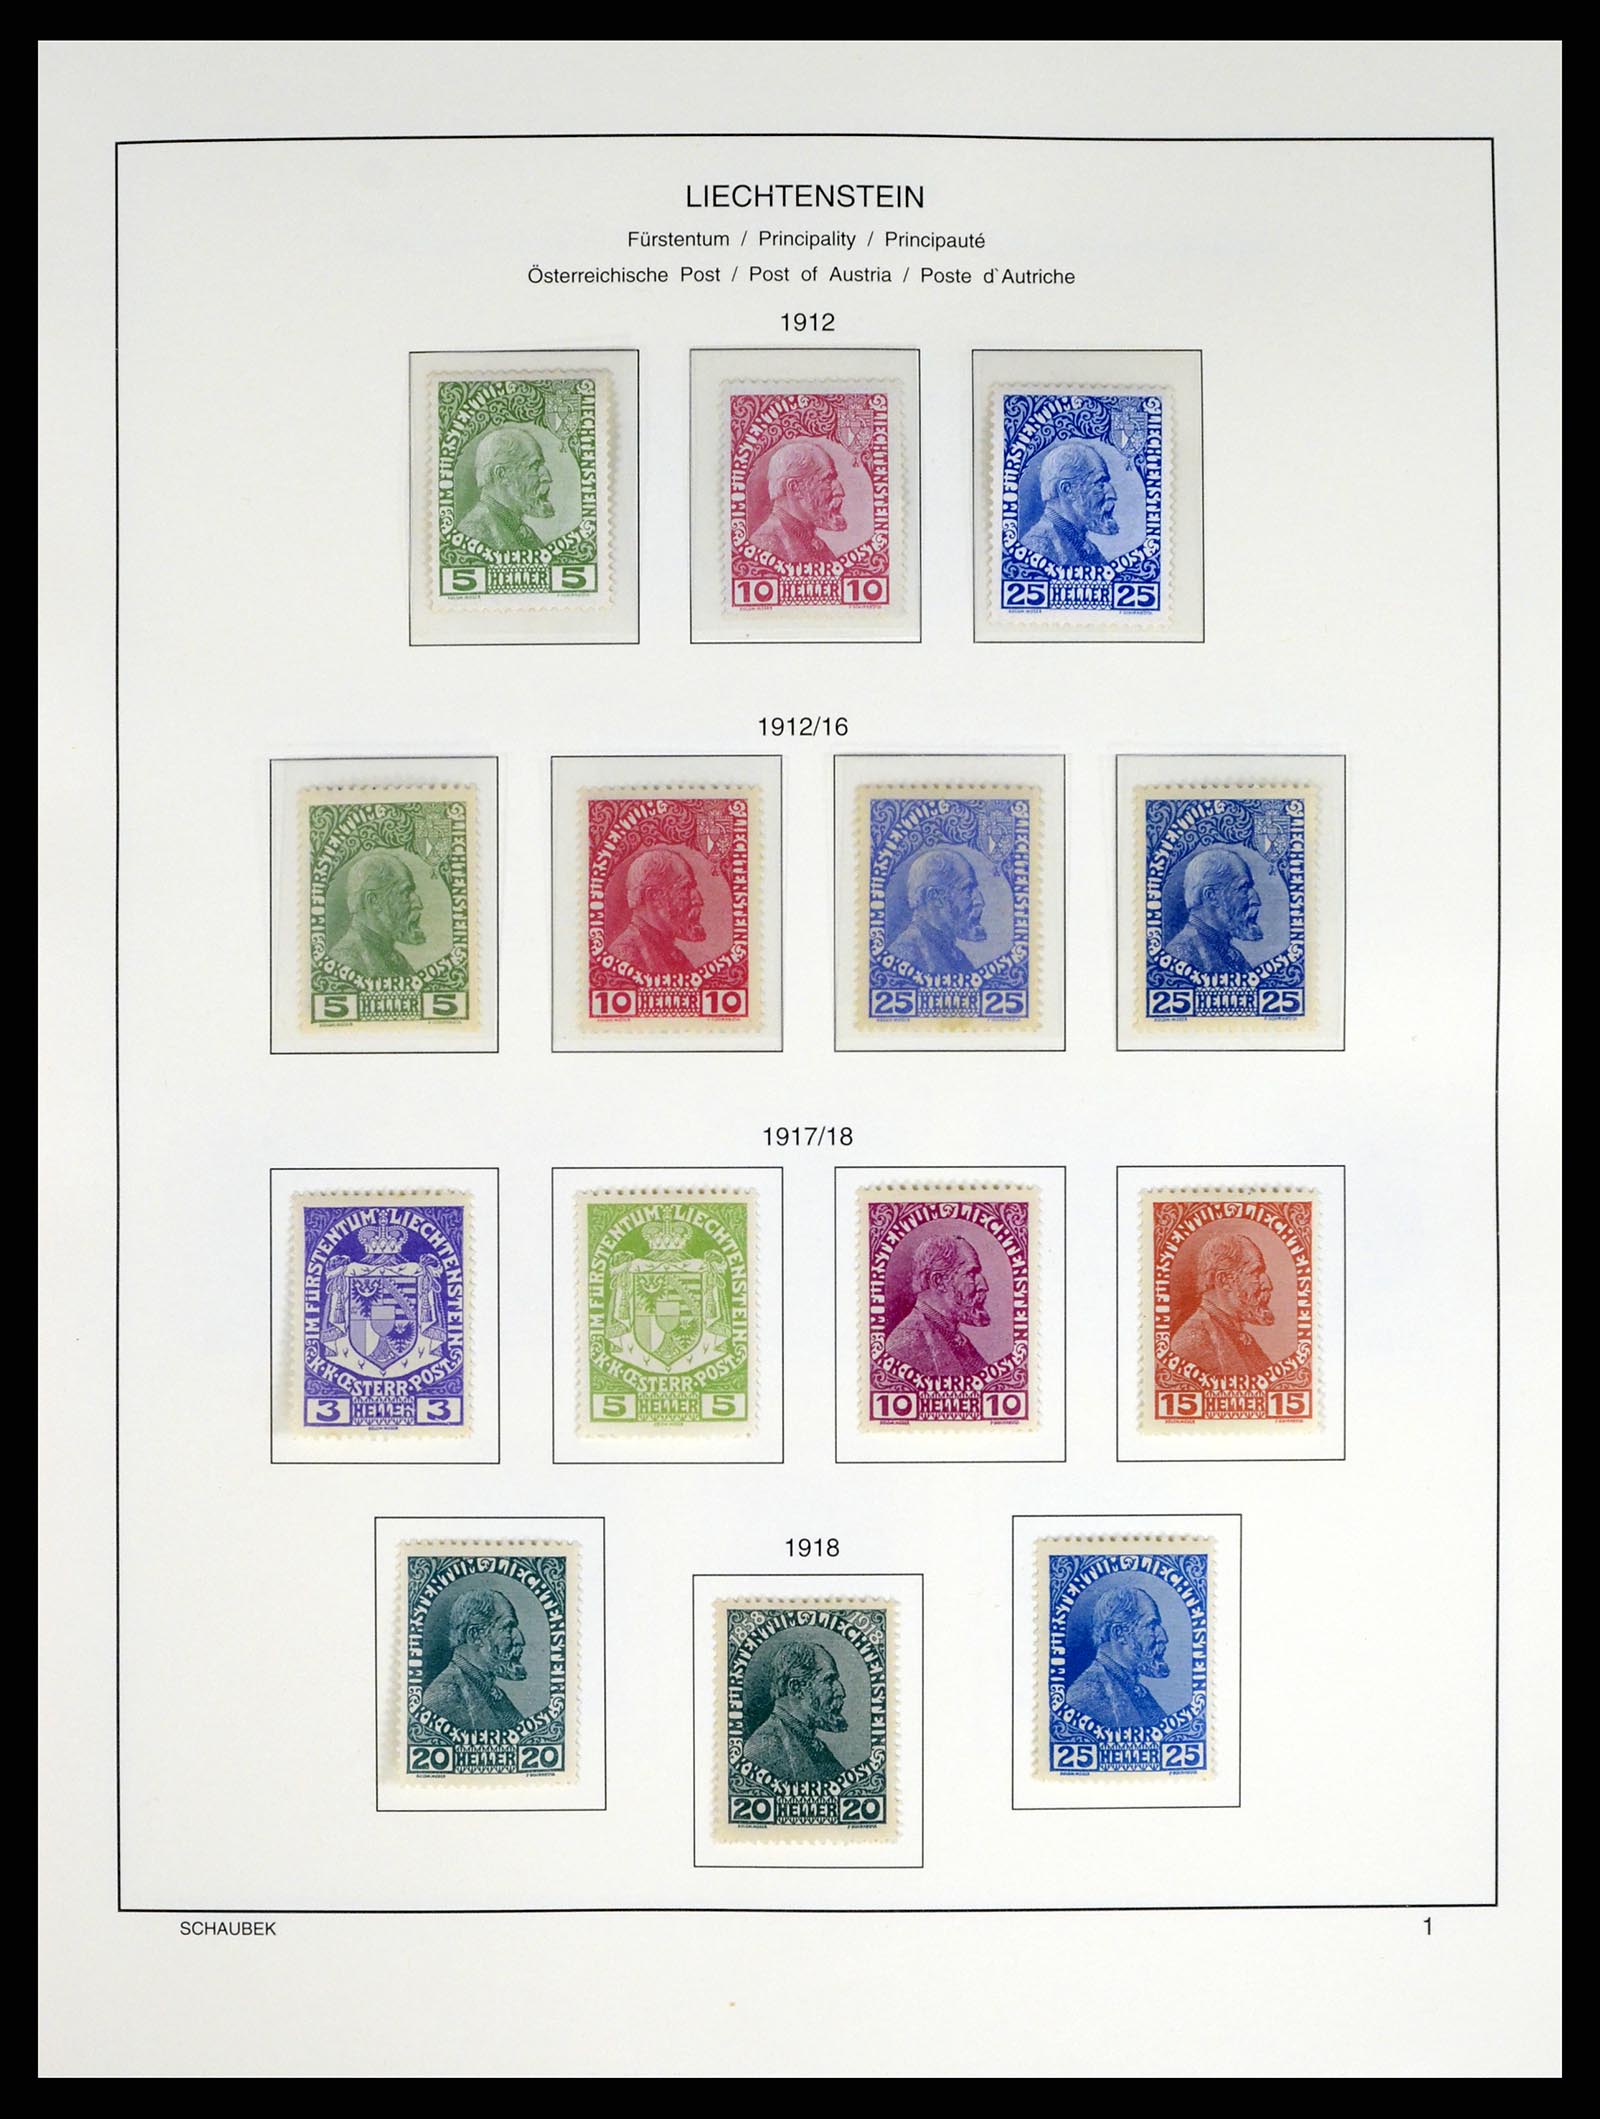 37547 001 - Stamp collection 37547 Liechtenstein 1912-2011.